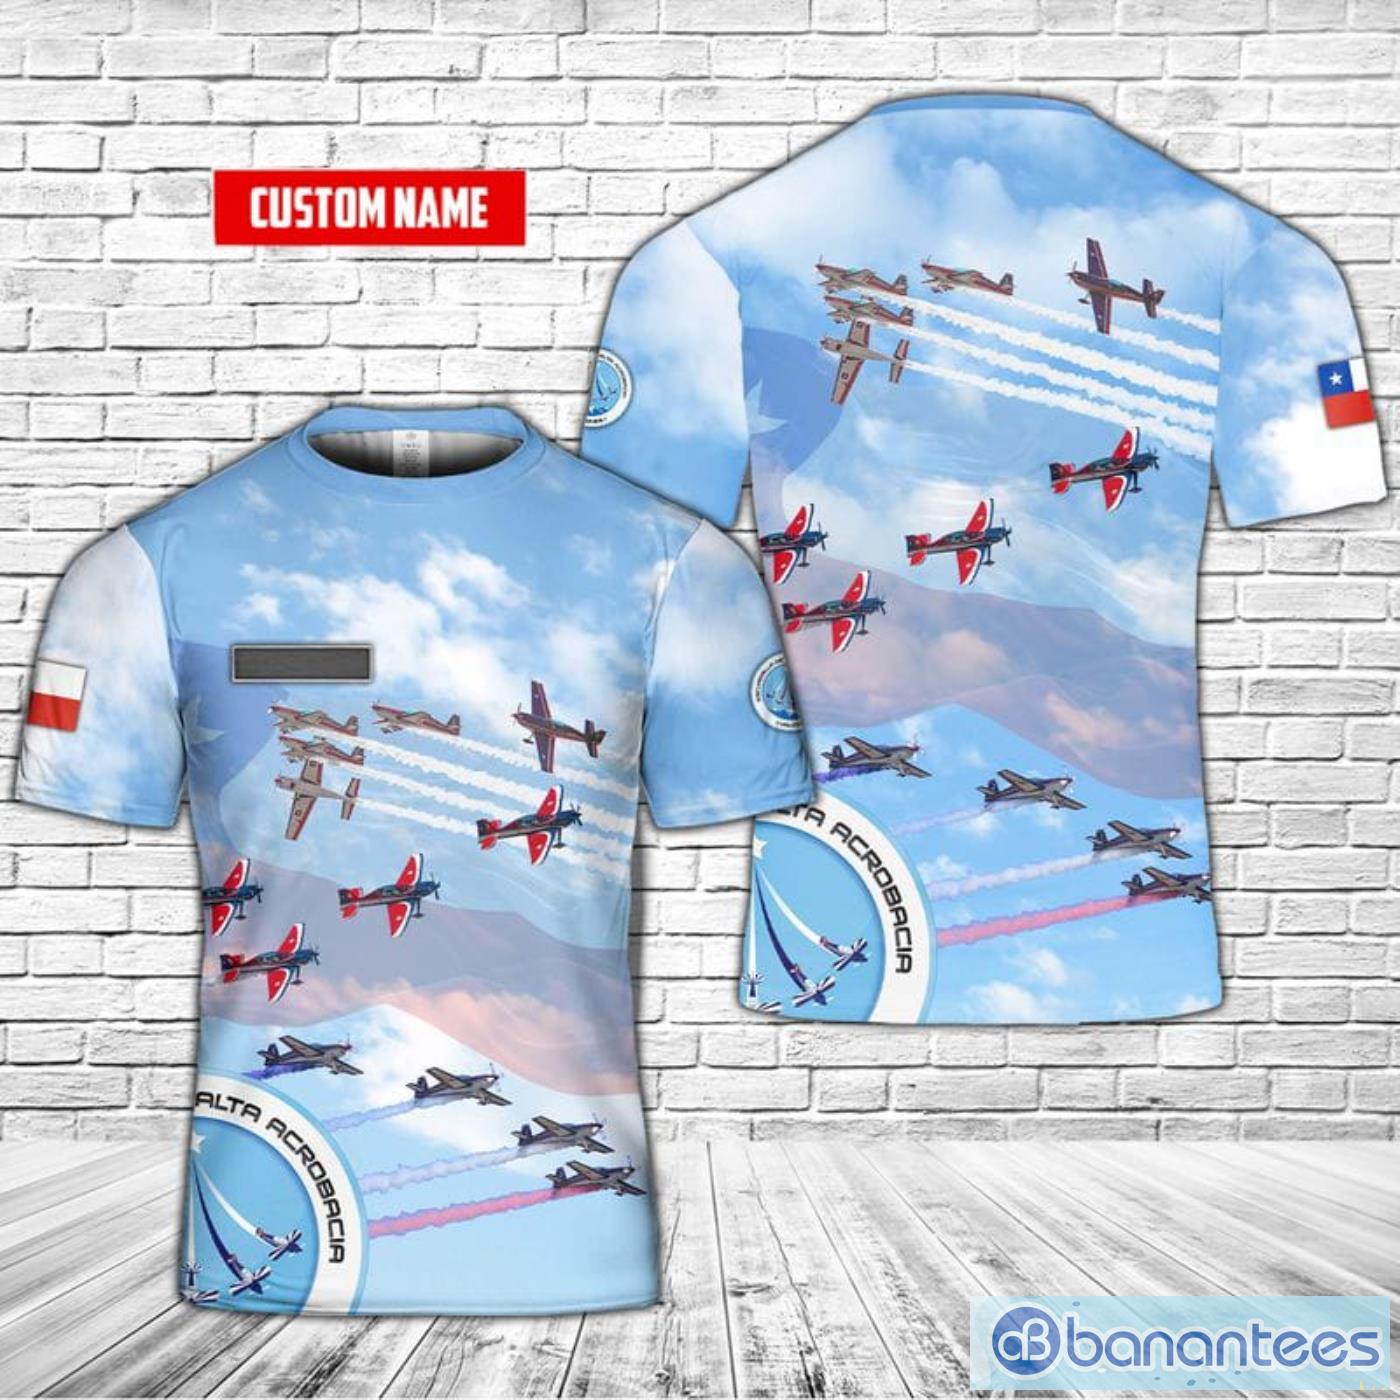 Custom Name Chilean Air Force Escuadrilla De Alta Acrobacia Halcones (Hawks High Aerobatics Squad) Aerobatic Flight Display Team All Print 3D T-Shirt Product Photo 1